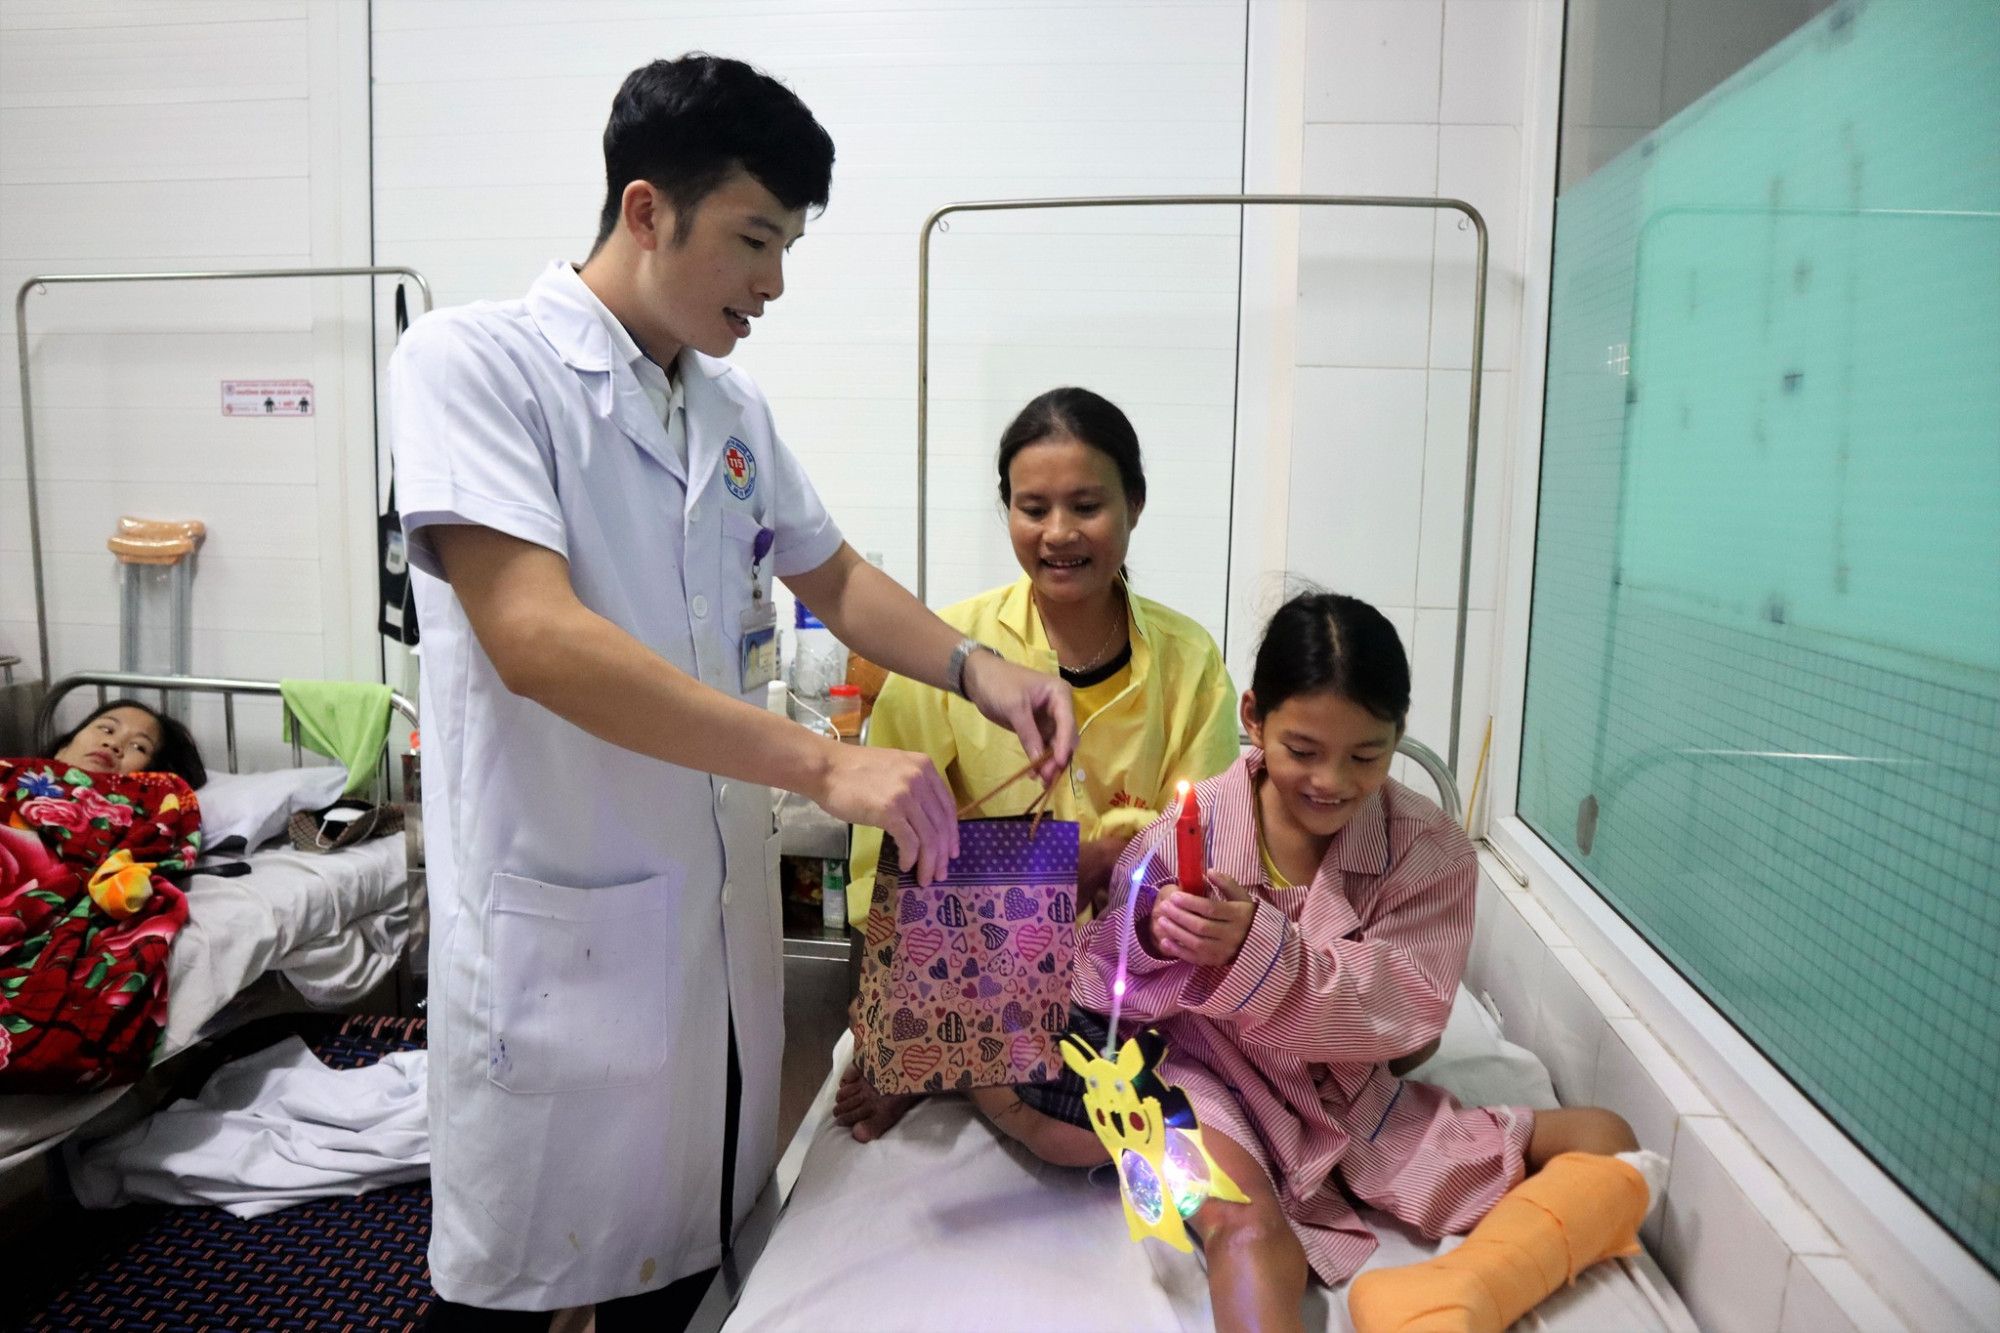 các bác sĩ Bệnh viện đa khoa 115 Nghệ An đã đến thăm hỏi, tặng quà, đèn Trung thu khích lệ tinh thần.Với một số bệnh nhi không thể tham gia chương trình do đang phải điều trị trên giường bệnh, c